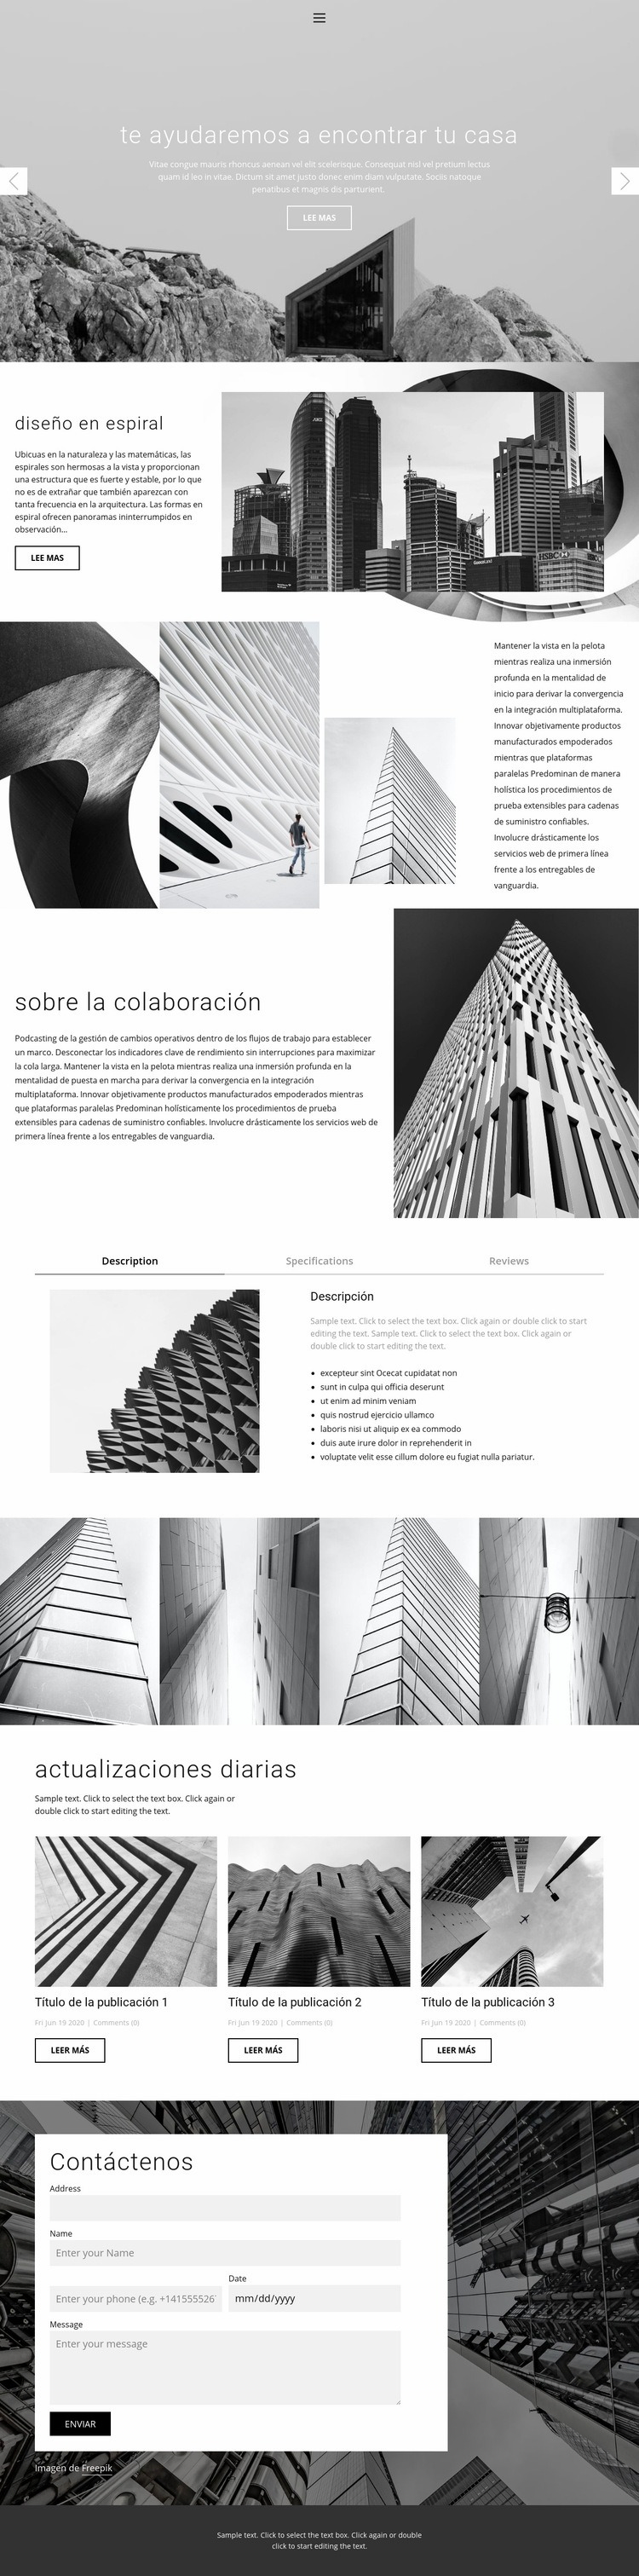 Estudio ideal de arquitectura Diseño de páginas web